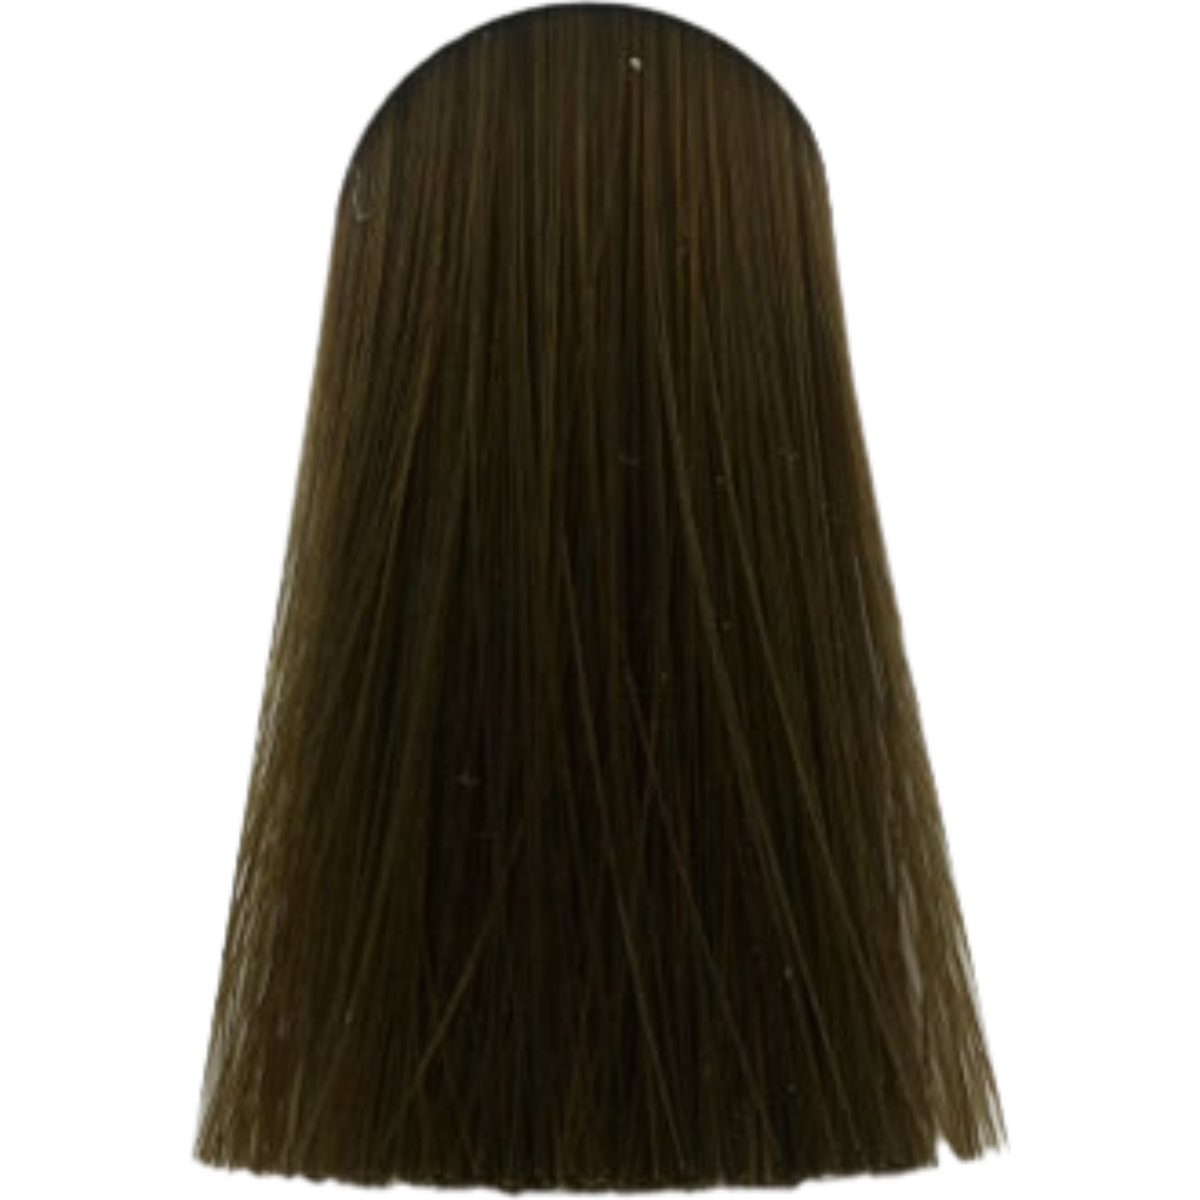 צבע לשיער בסיס מחוזק 8.00 LIGHT BLONDE INTENSE NATURAL אינדולה INDOLA צבע לשיער 60 גרם